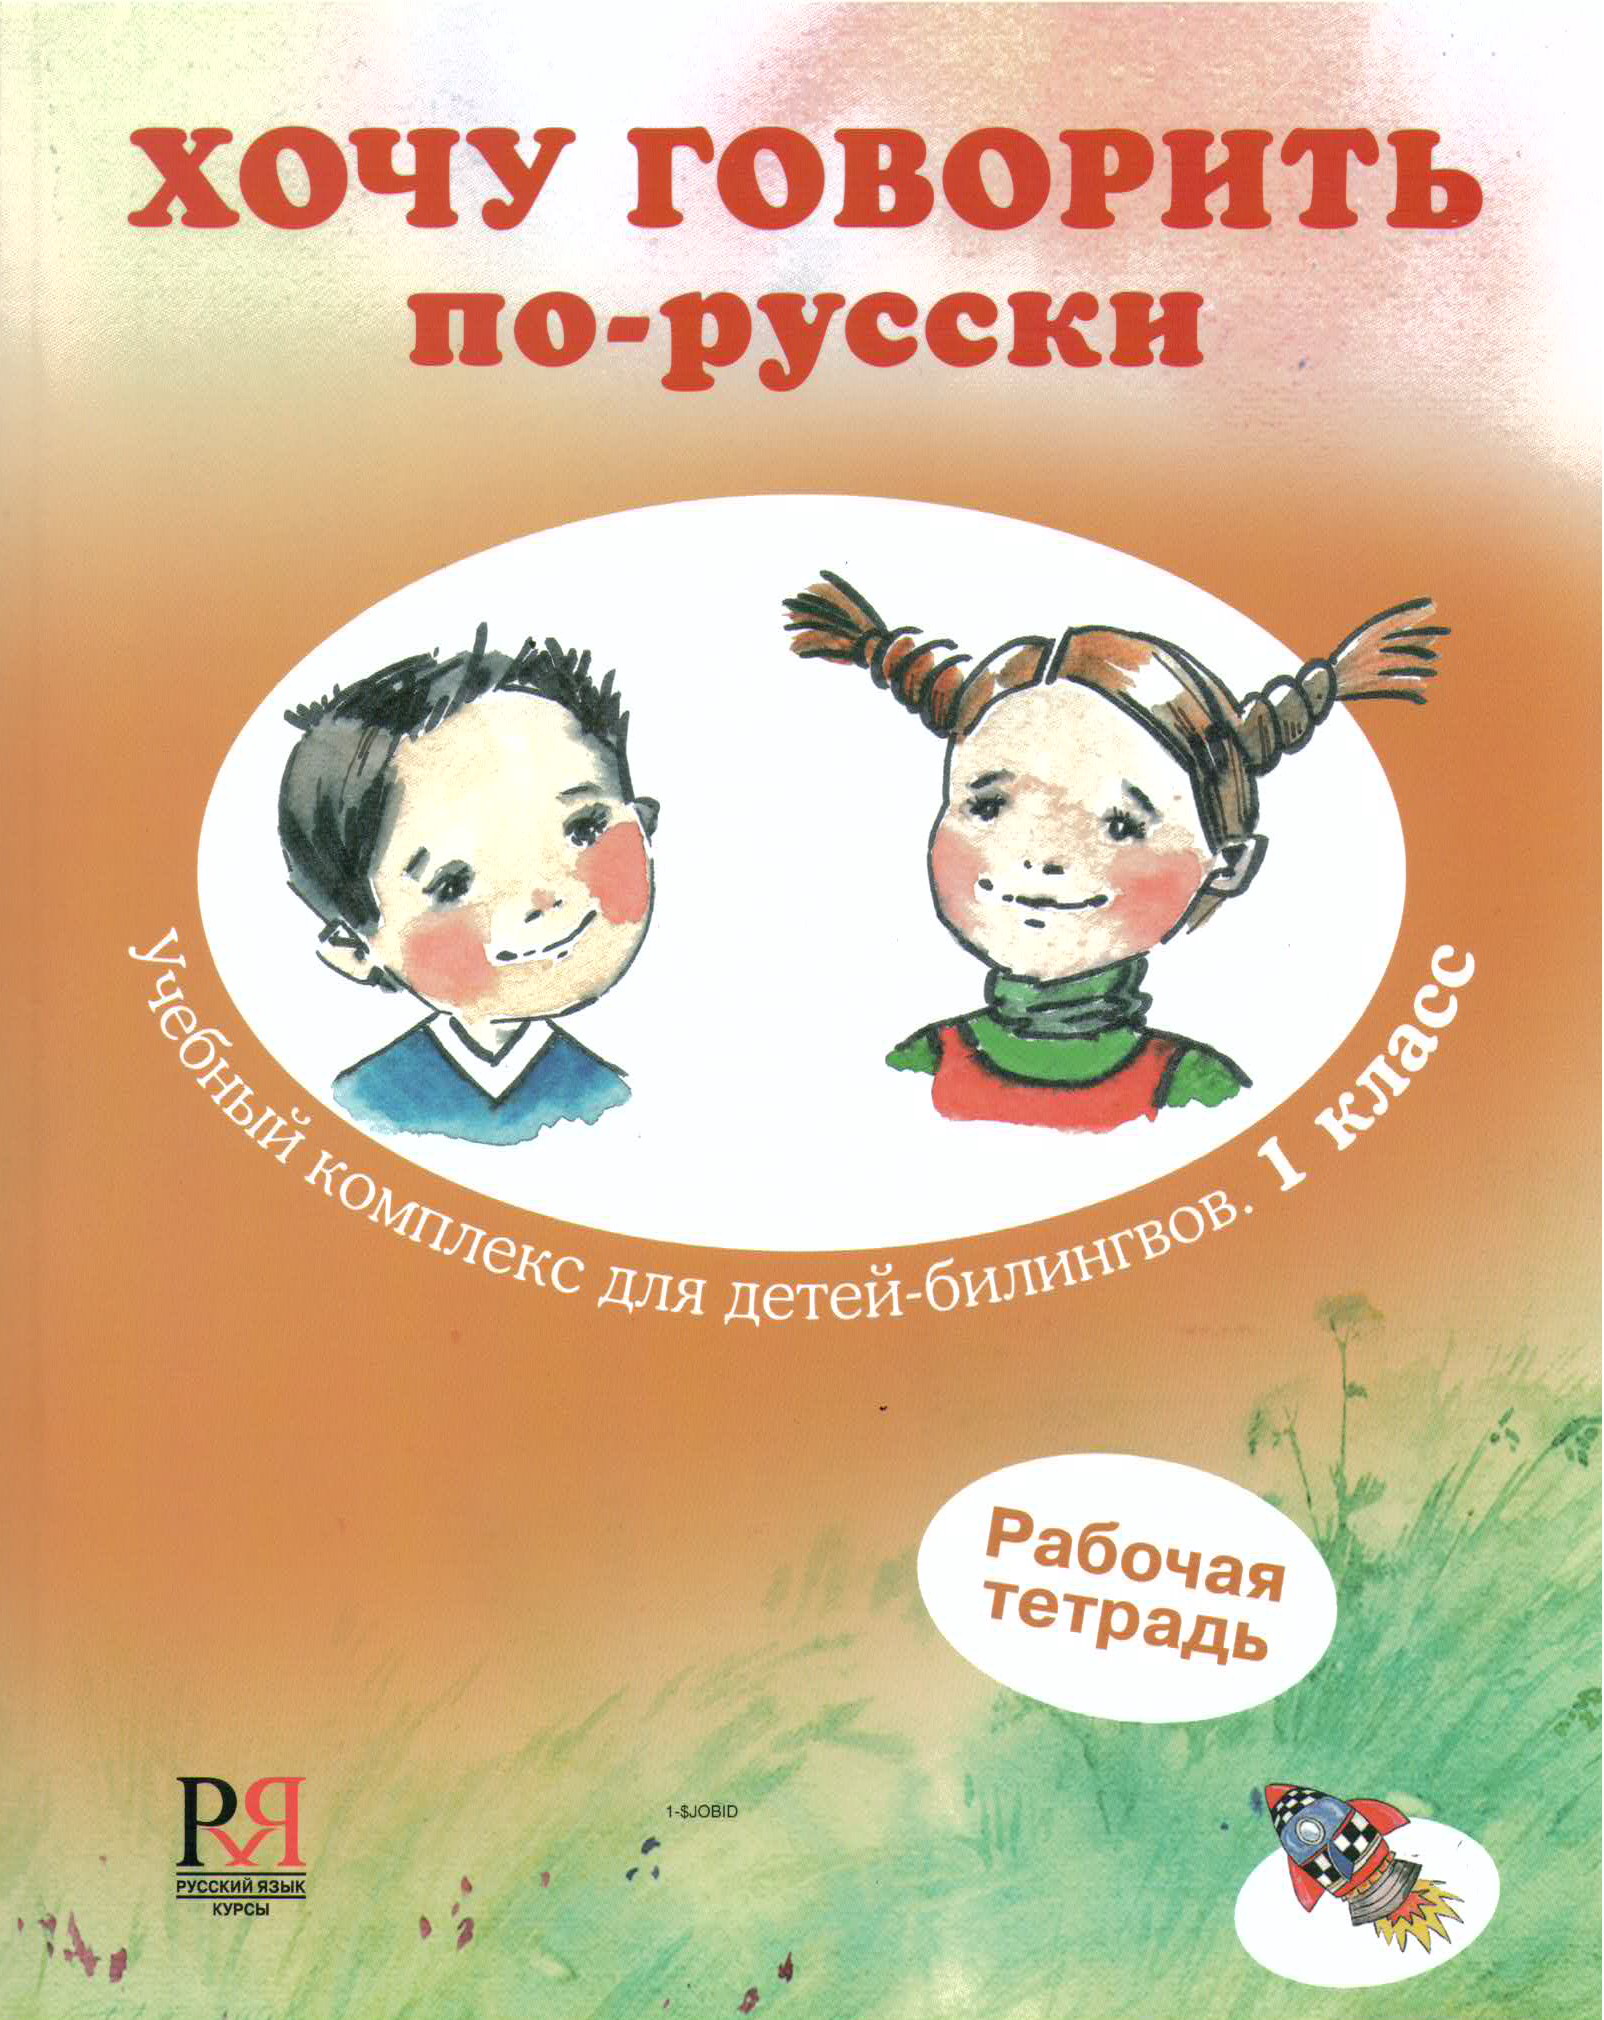 Хочу разговор по русски. Книги для детей билингвов. Изучаем русский язык для детей. Изучение русского языка дошкольники. Обучающие книги для детей.